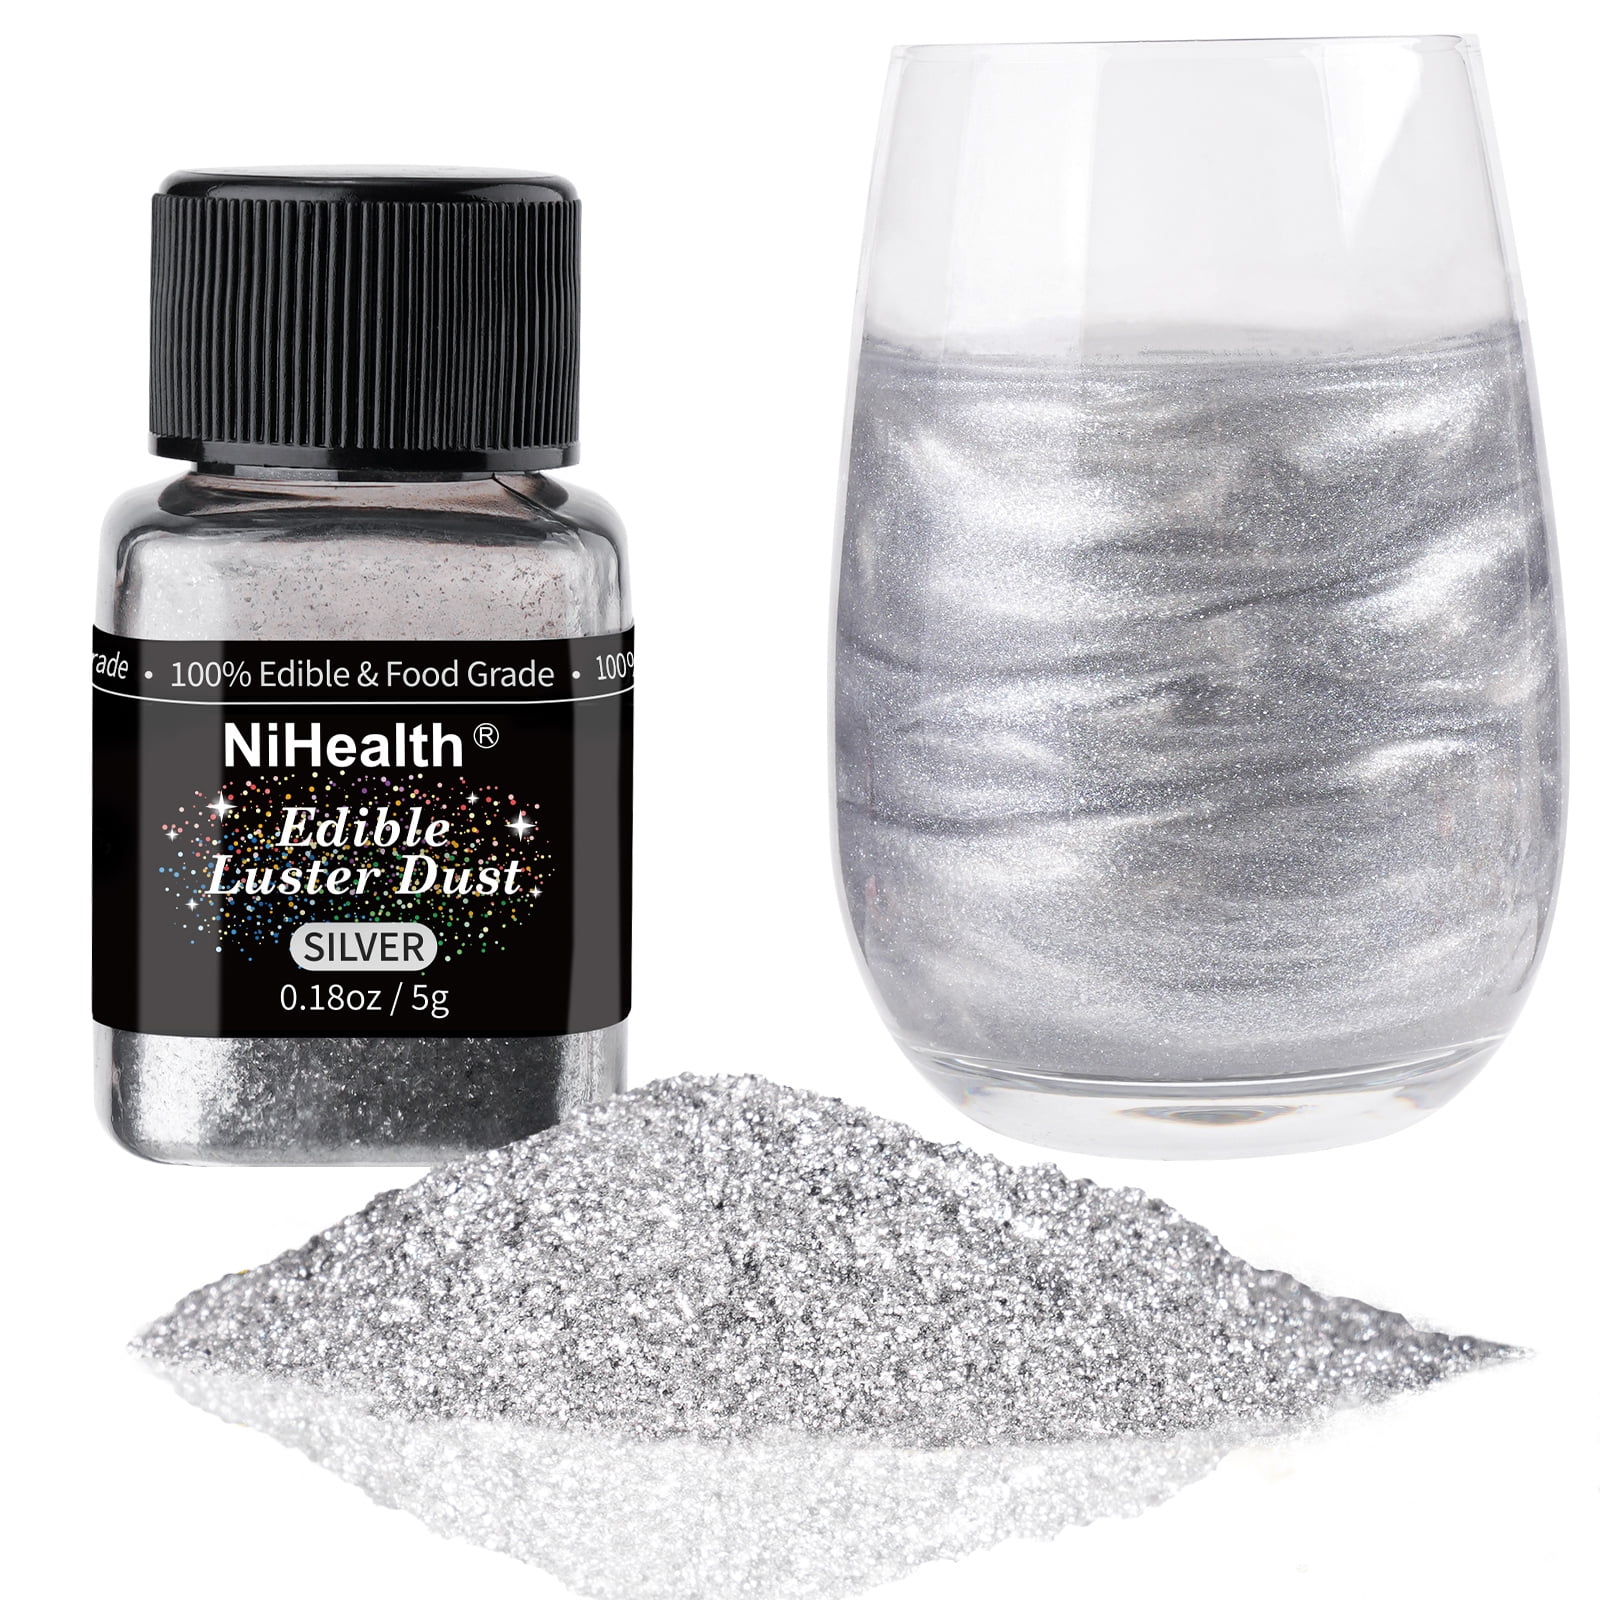 Black Edible Glitter | Tinker Dust® 5 Grams